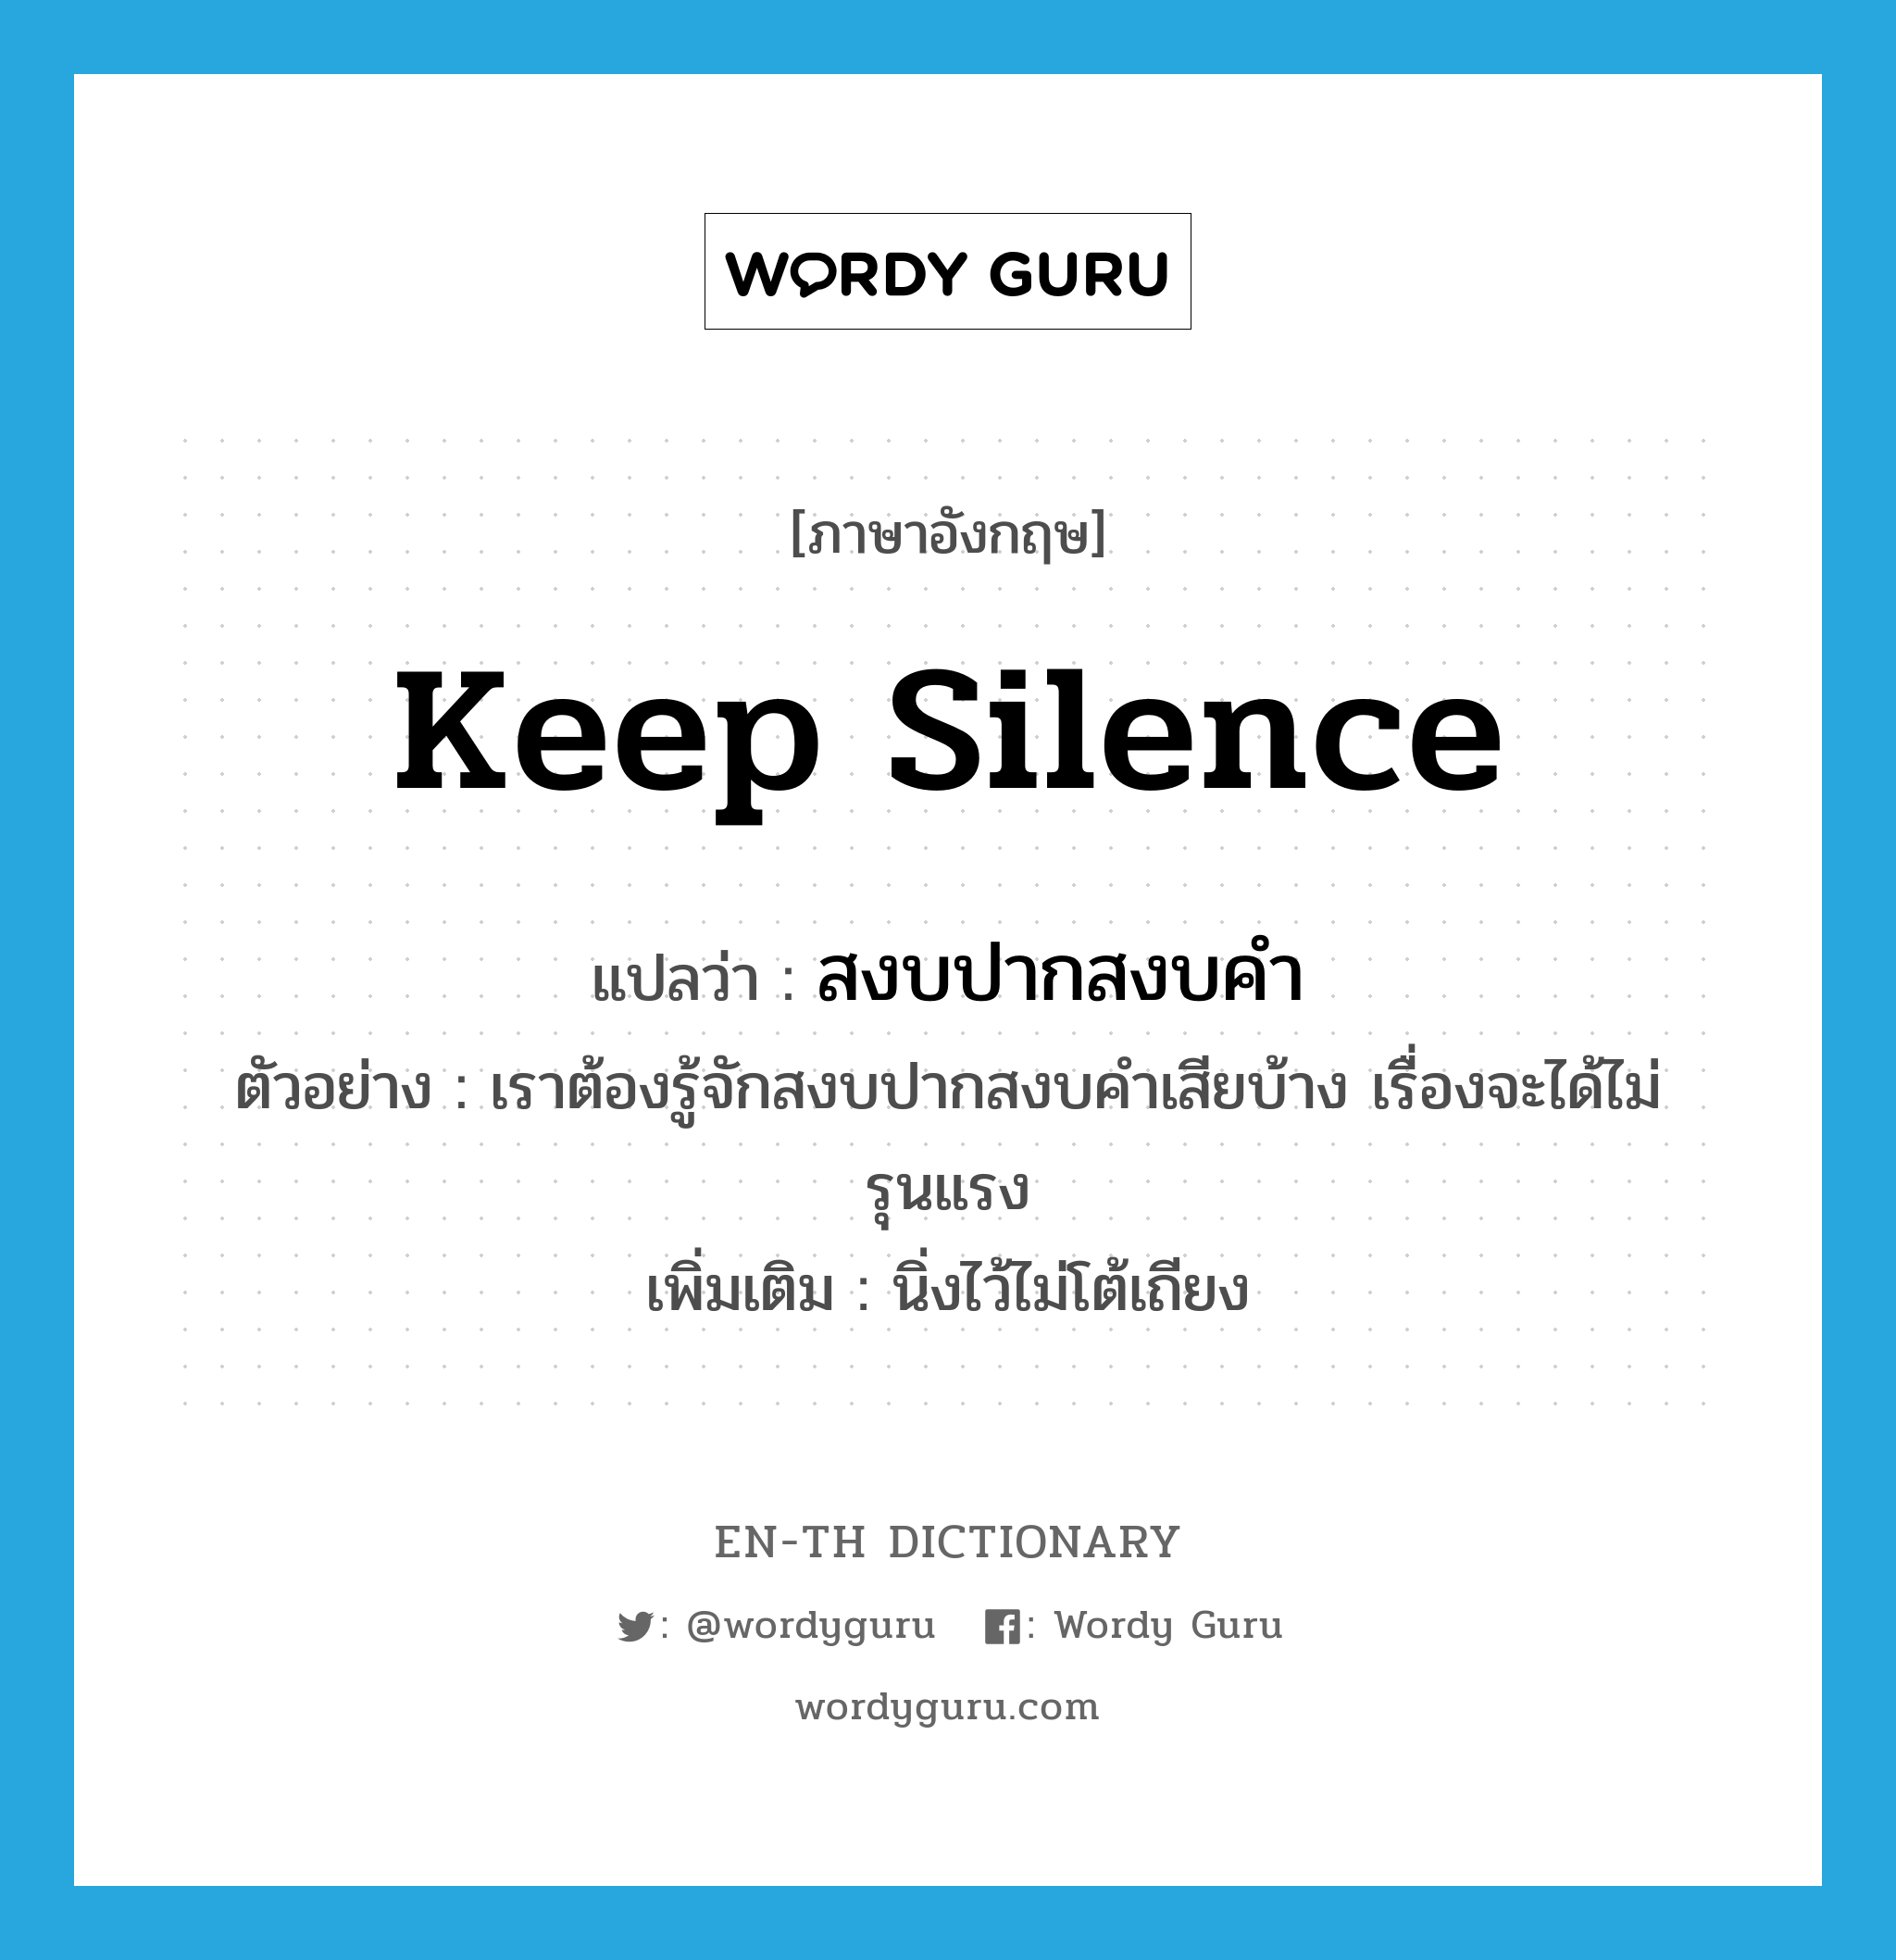 keep silence แปลว่า?, คำศัพท์ภาษาอังกฤษ keep silence แปลว่า สงบปากสงบคำ ประเภท V ตัวอย่าง เราต้องรู้จักสงบปากสงบคำเสียบ้าง เรื่องจะได้ไม่รุนแรง เพิ่มเติม นิ่งไว้ไม่โต้เถียง หมวด V